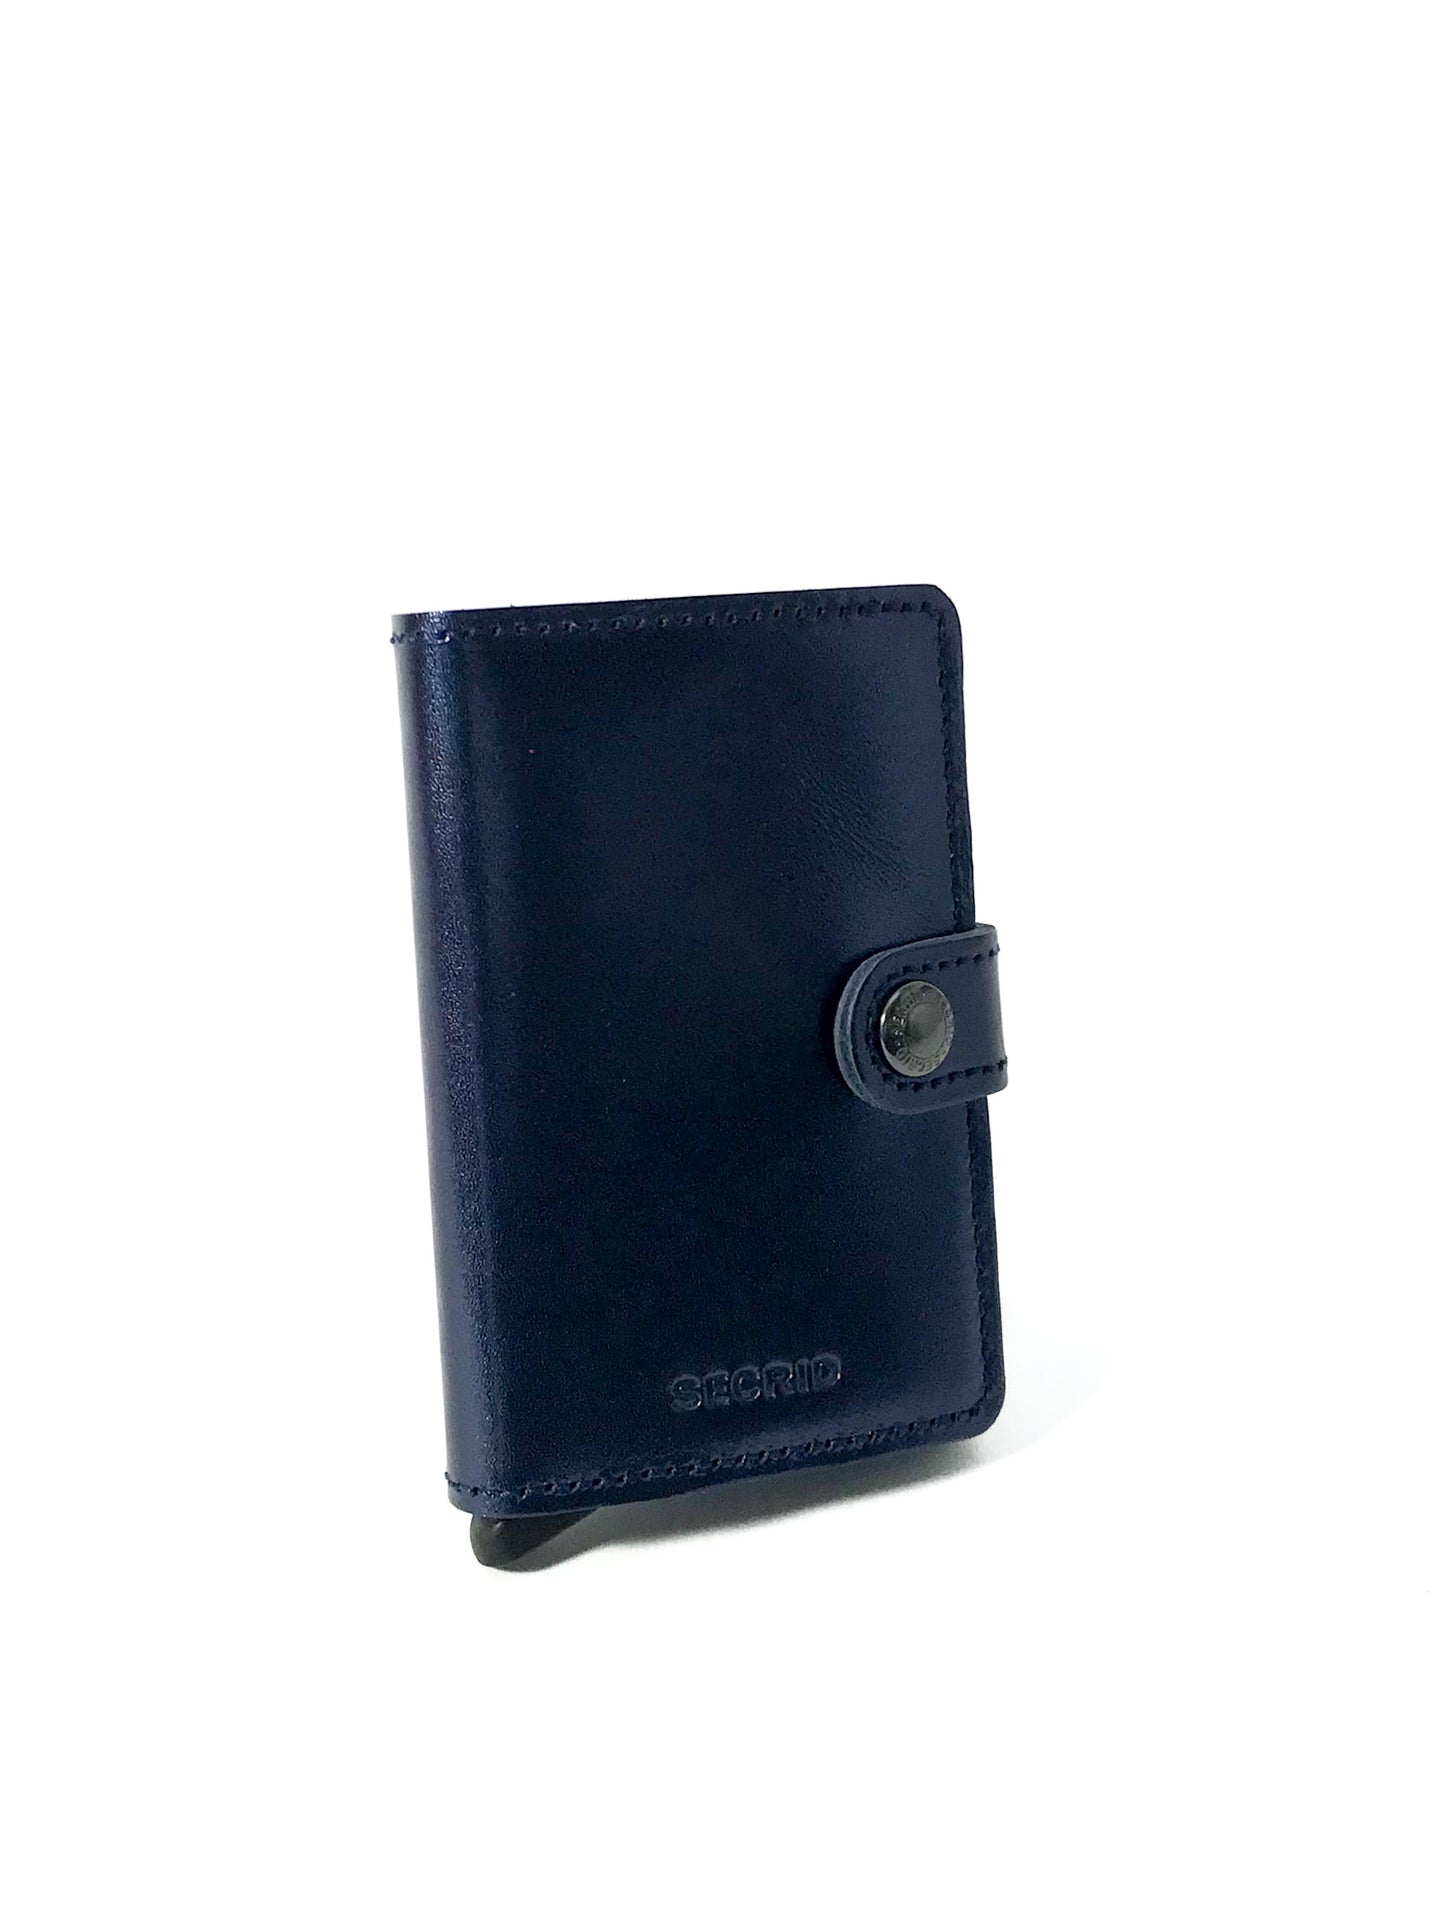 Brieftasche "Miniwallet" Metallic Blue - Ottofkkoch